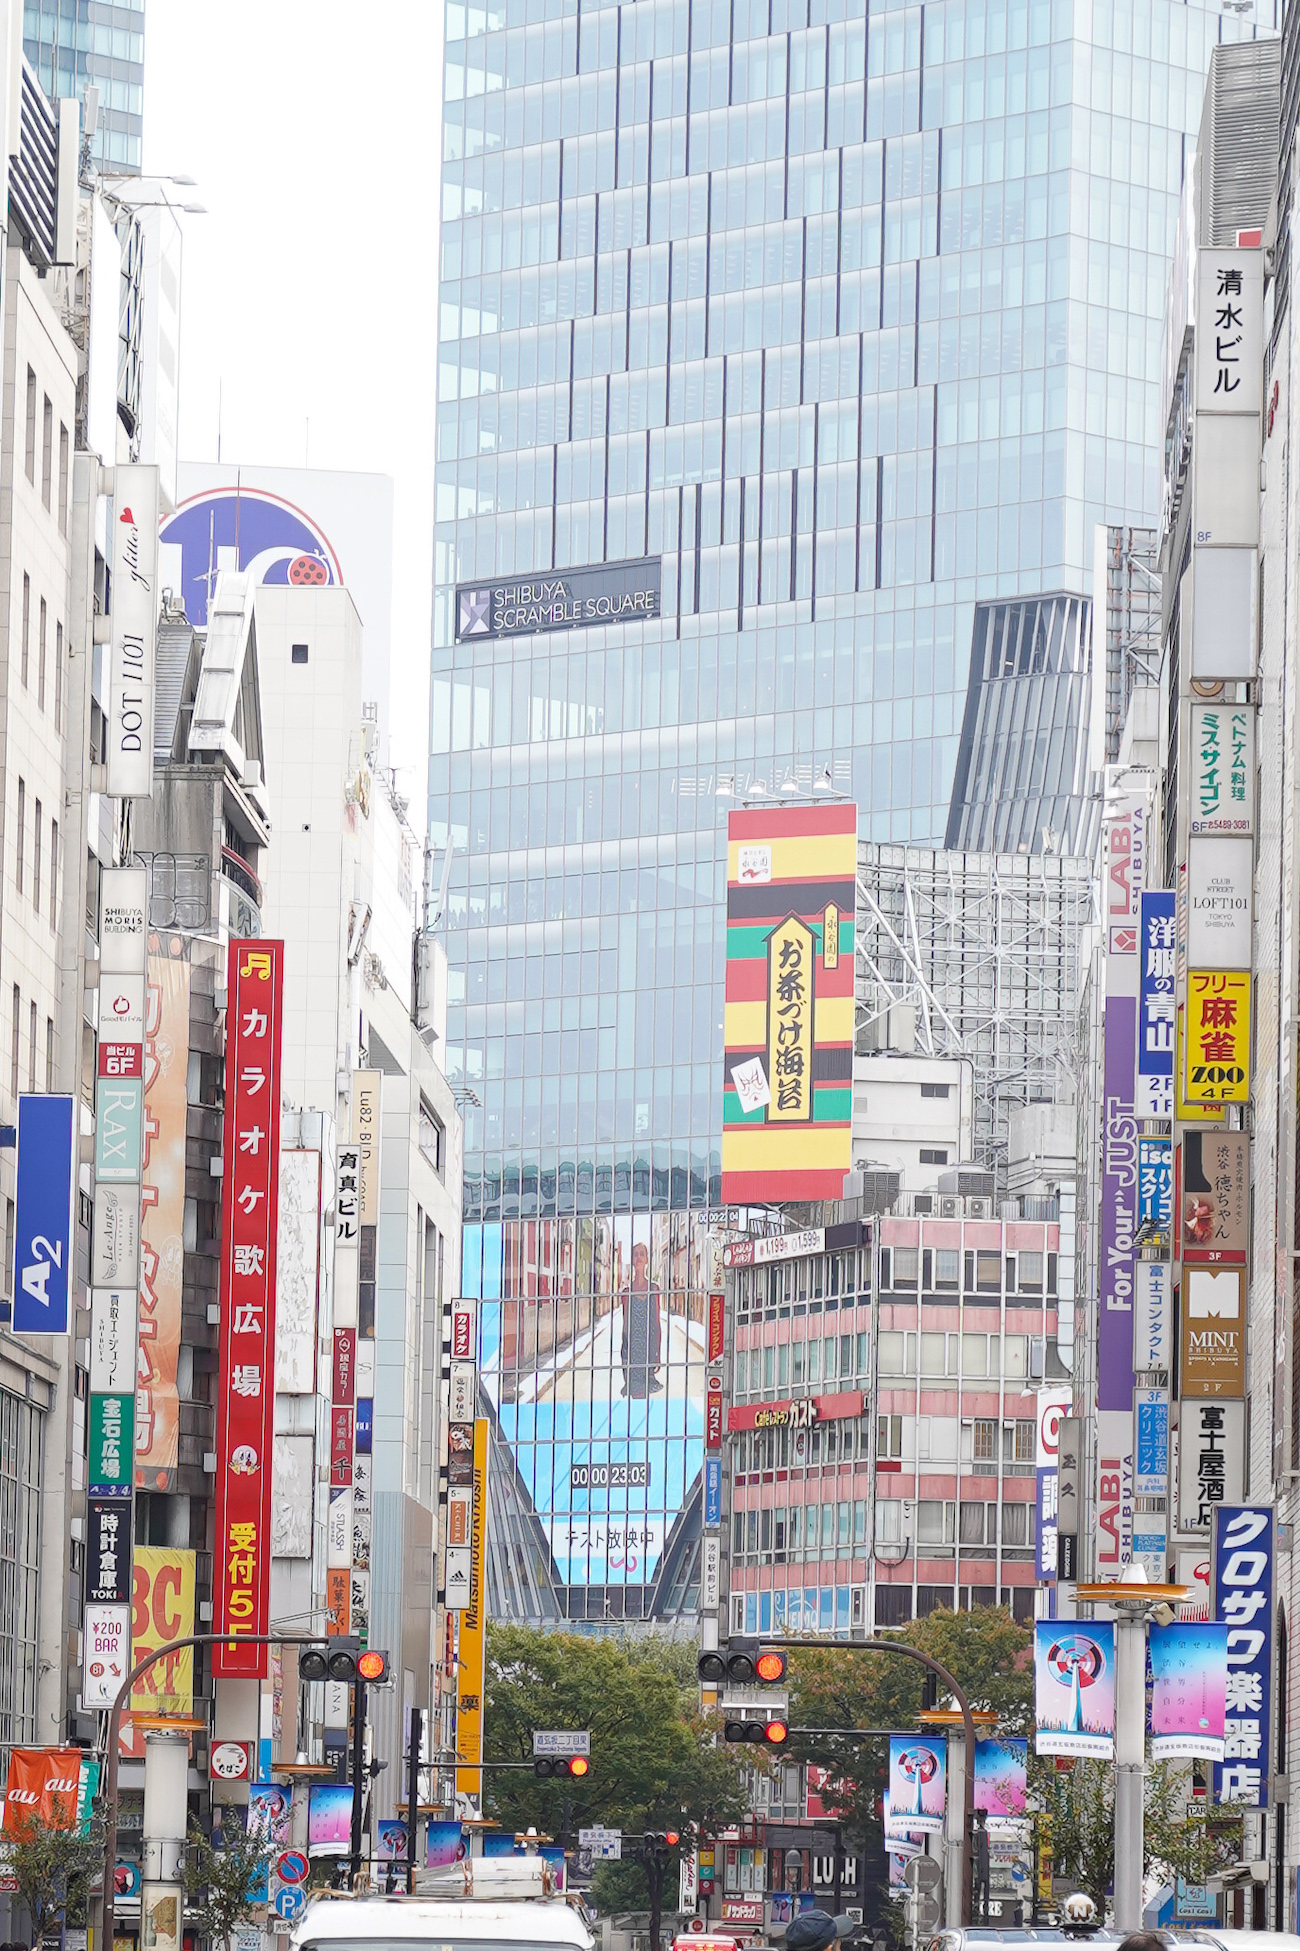 東急本店三差路から眺めた「渋谷スクランブルスクエアのヴィジョン」2019年11月3日、撮影：SHUN ONLINE